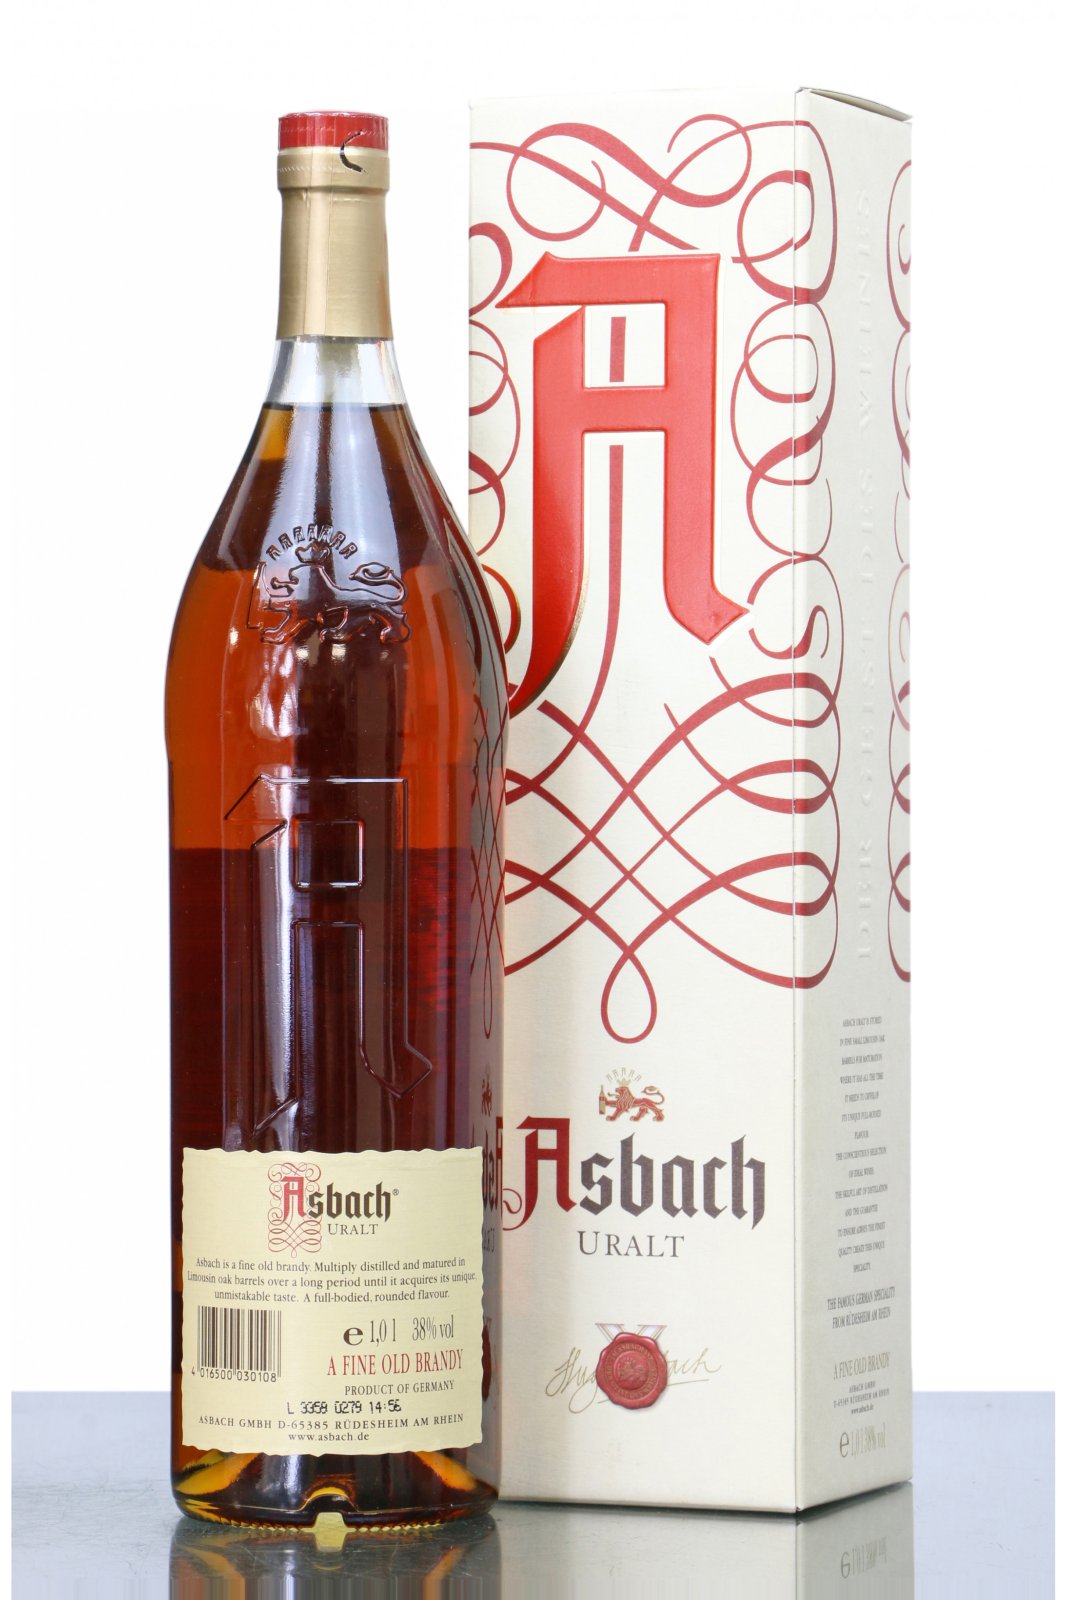 asbach-uralt-brandy-1-litre-1498213223.jpg